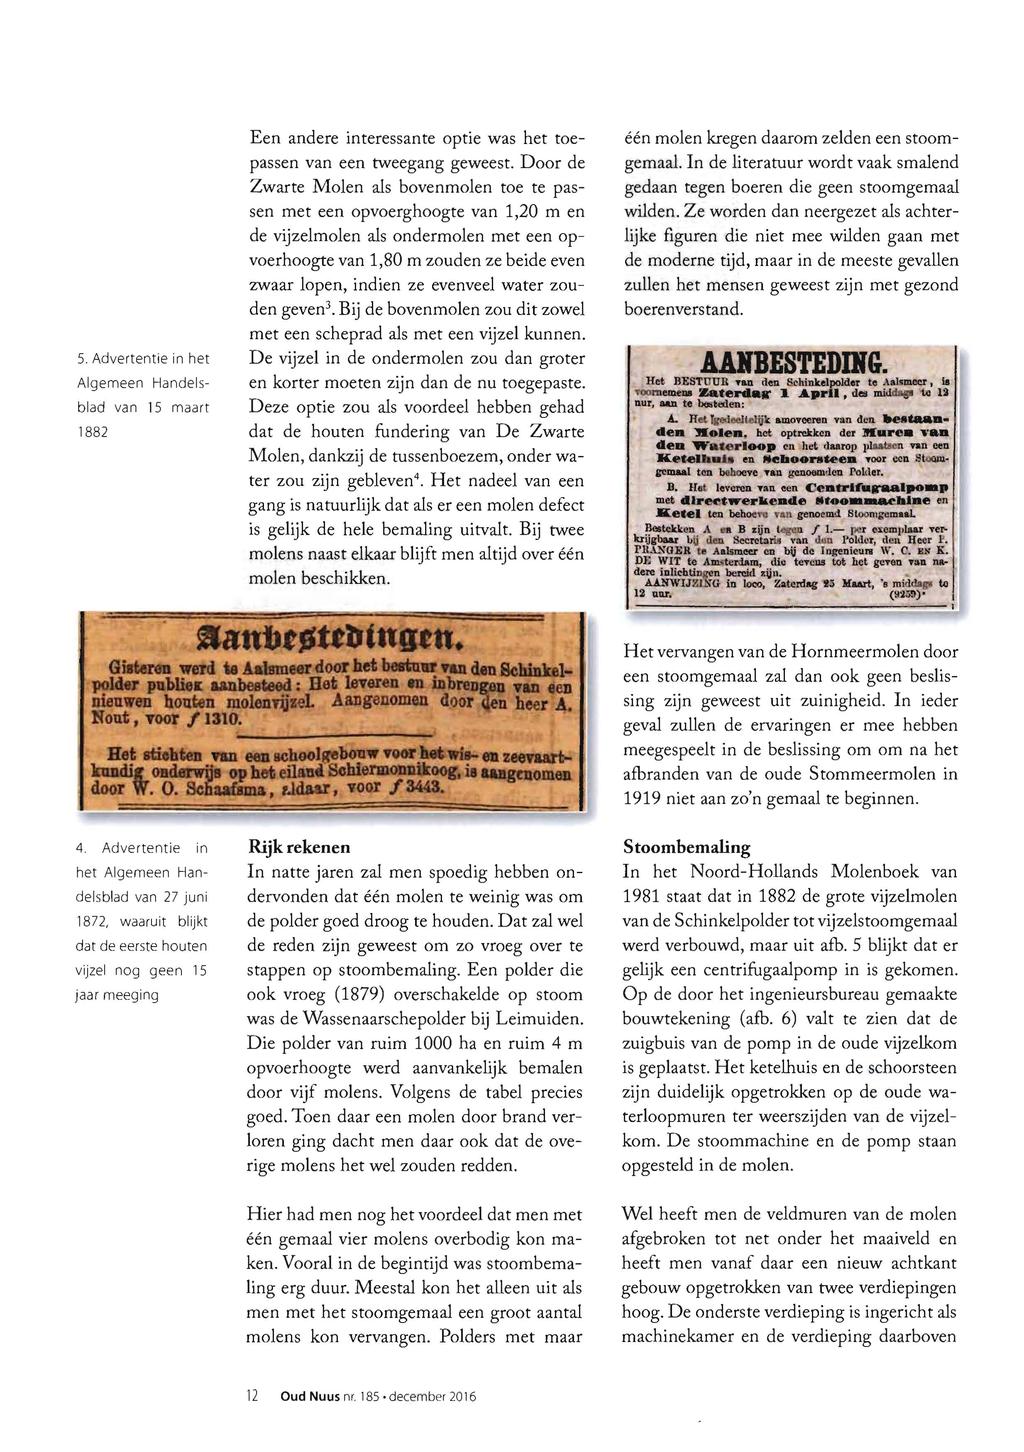 5. Advertentie in het Algemeen Handelsblad van 15 maart 1882 Een andere interessante optie was het toepassen van een tweegang geweest.